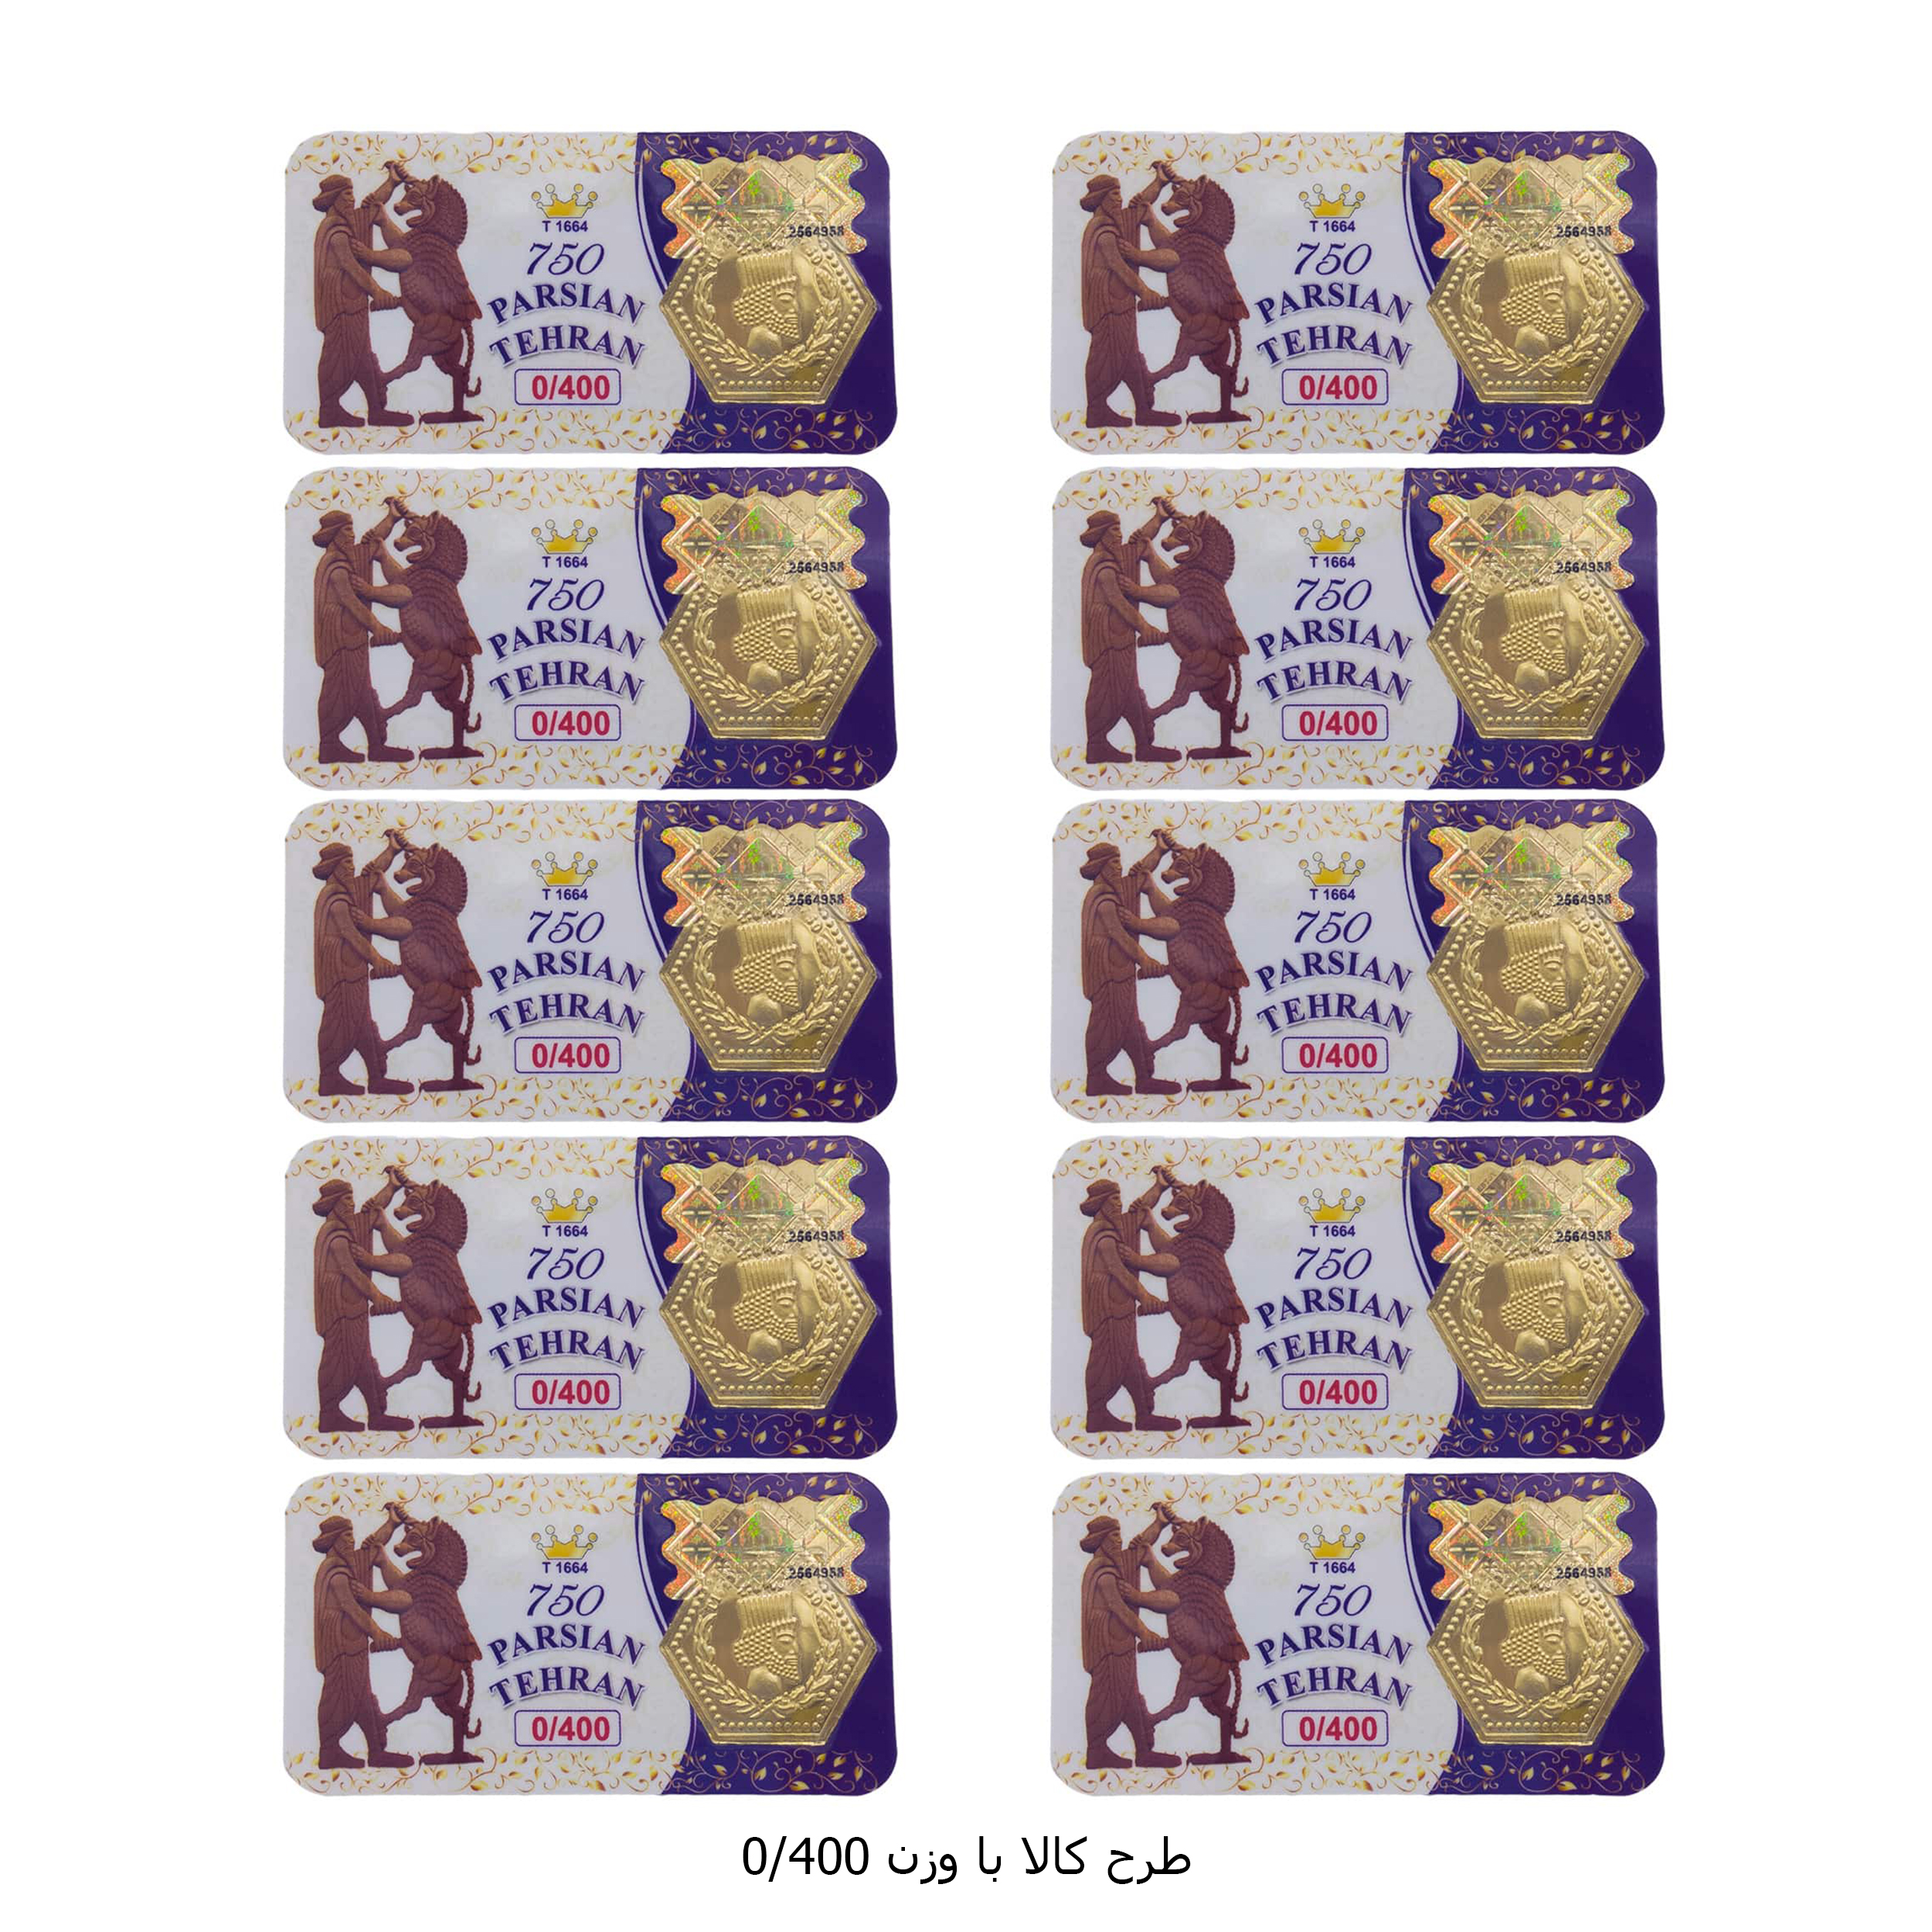 سکه گرمی طلا 18 عیار پارسیان تهران مدل K412 مجموعه 10 عددی -  - 11